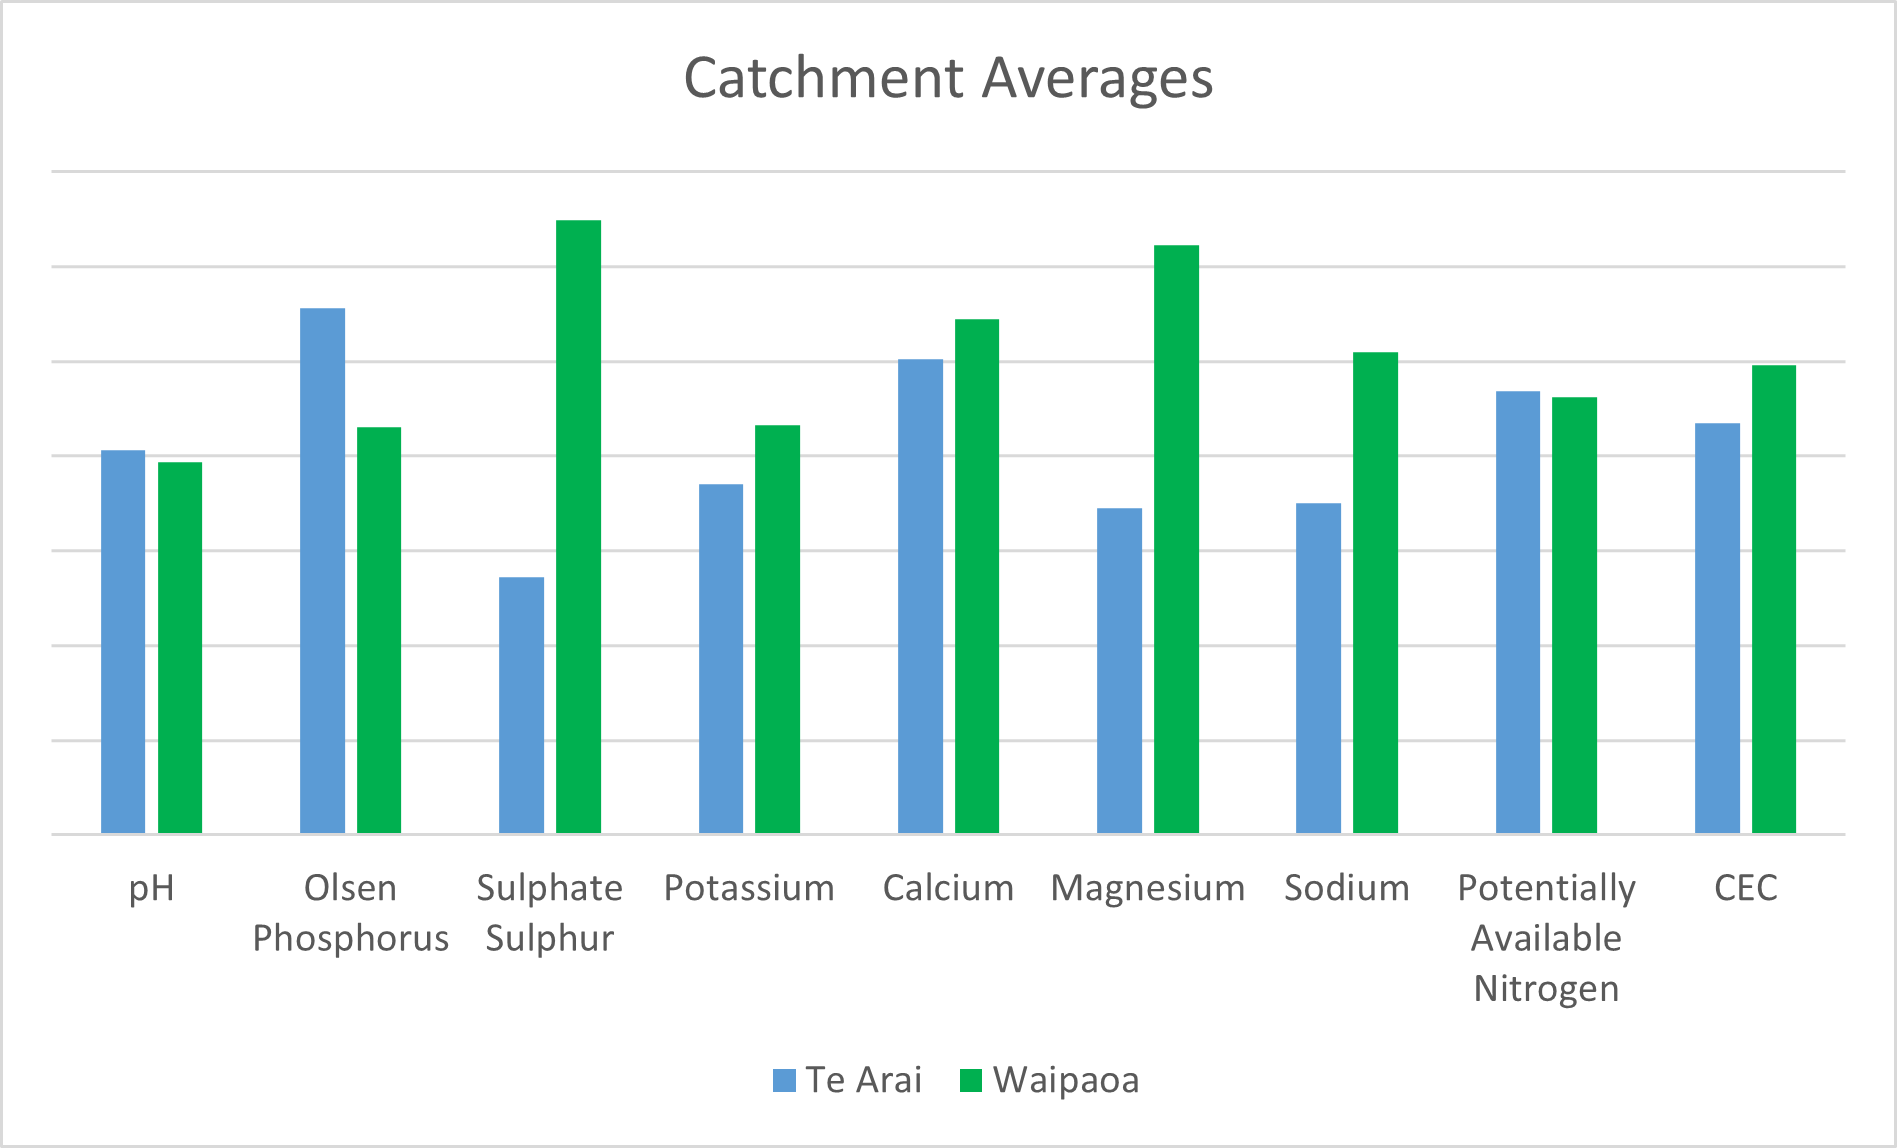 Catchment averages